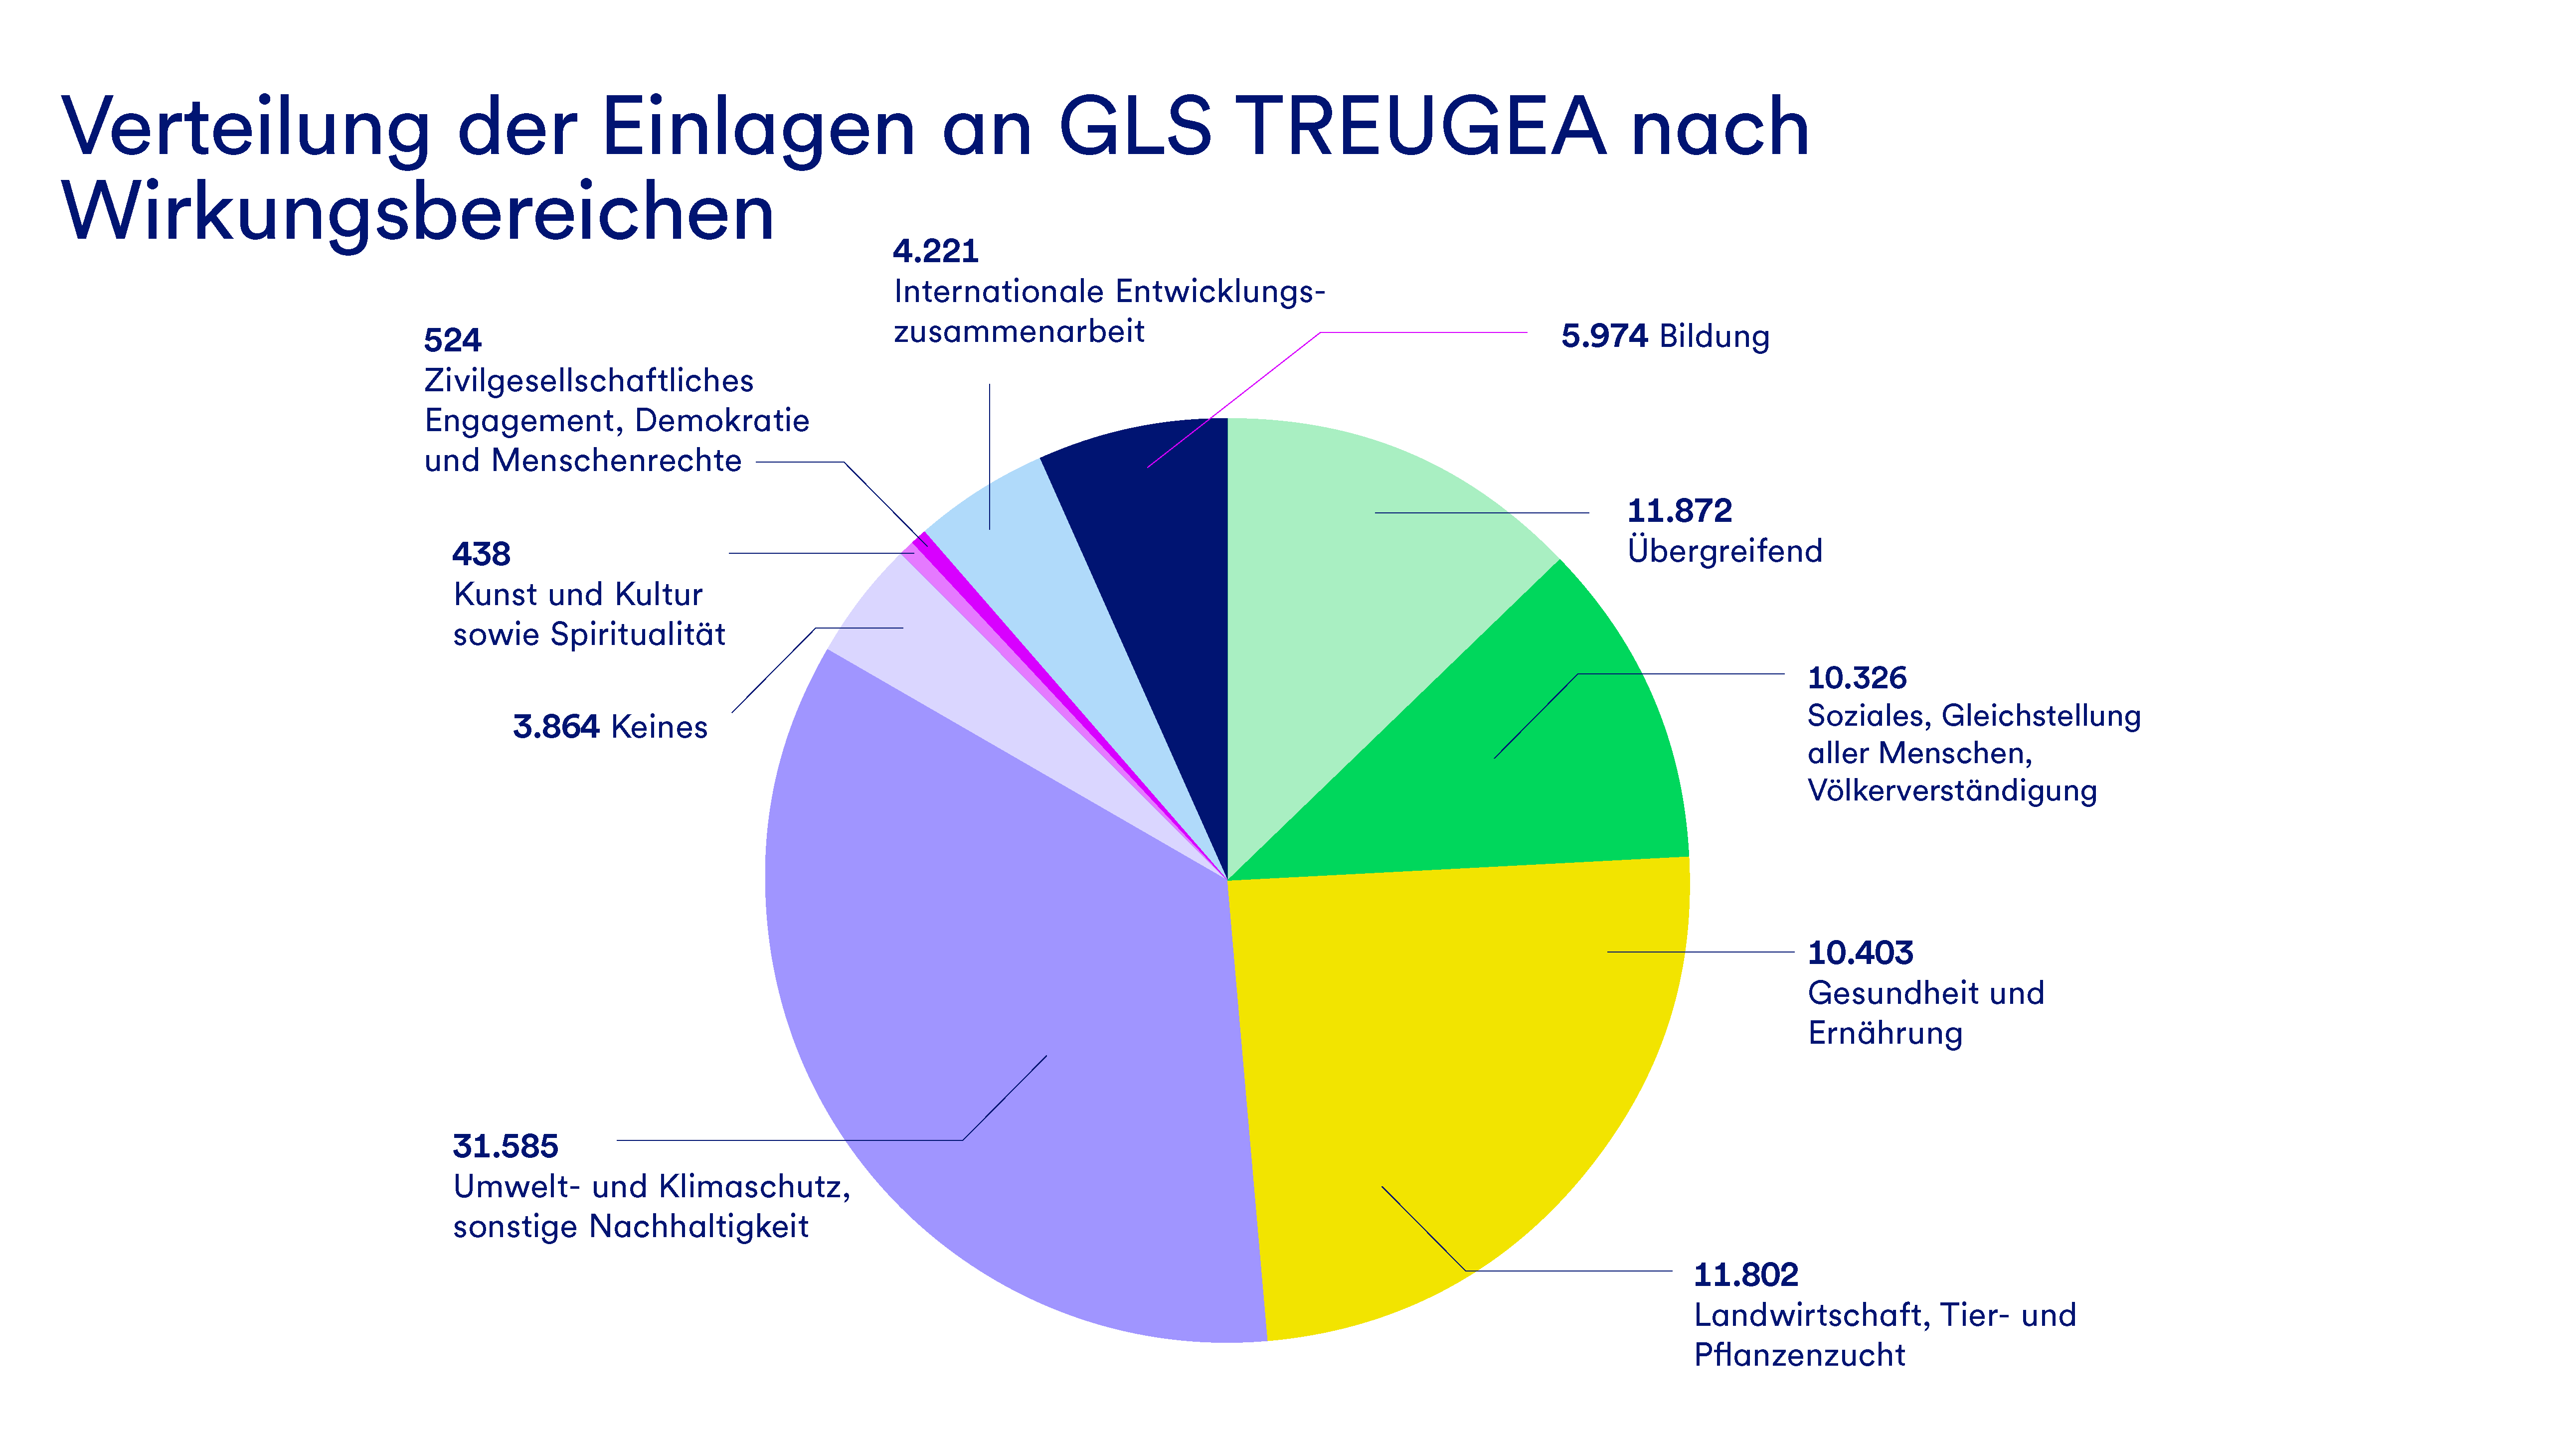 Eine Grafik, die die Verteilung der Einlagen an GLS Treugea nach Wirkungsbereichen darstellt.